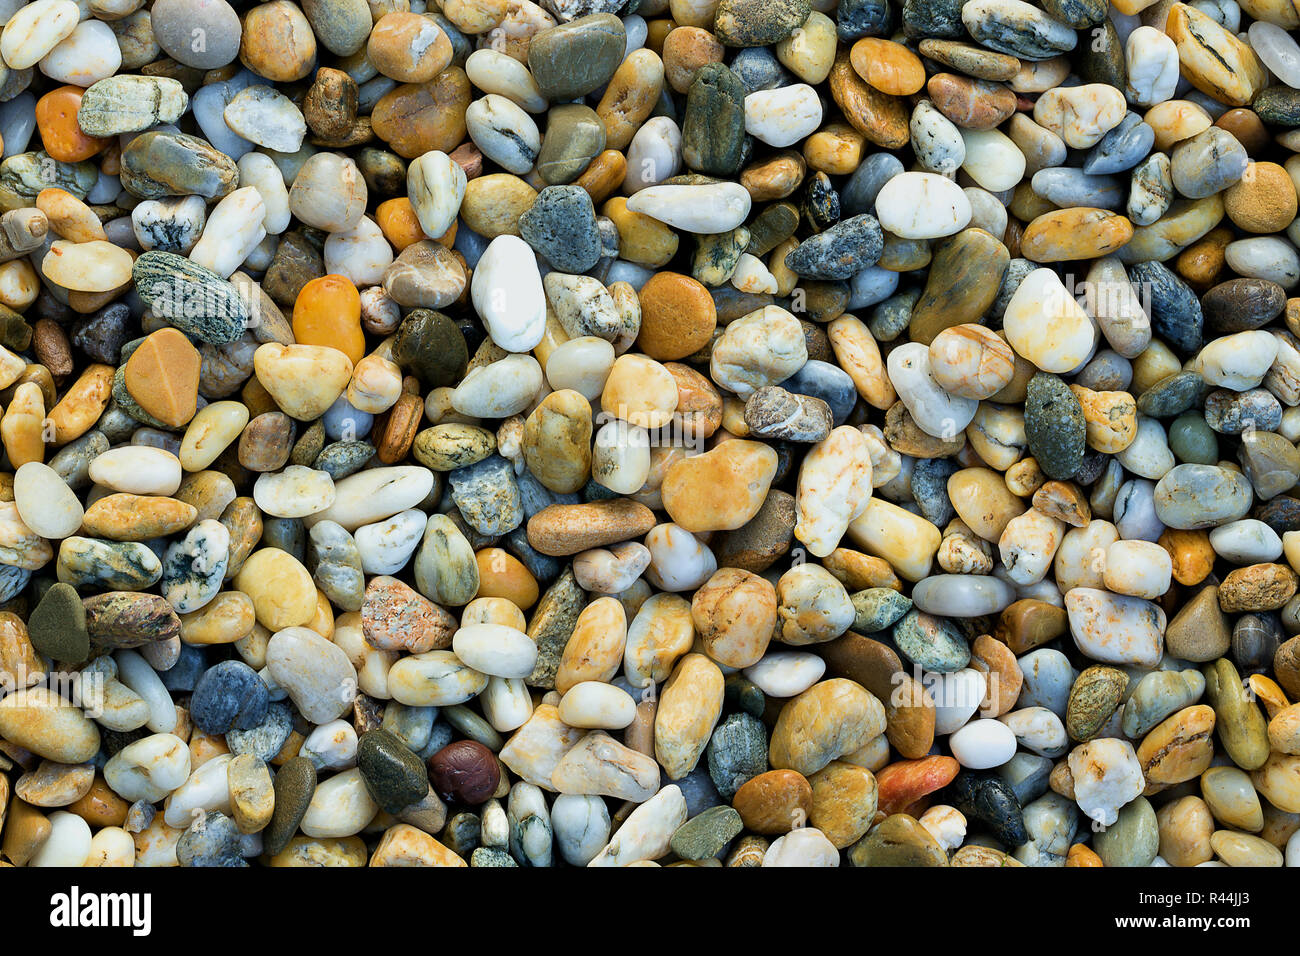 Kies Textur. Kleine Steine, kleine Steine, Kieselsteine in vielen  Schattierungen von Grau, Weiß, Braun, Blau, Farbe gelb. Hintergrund Der  kleine nasse Steine in Oval Stockfotografie - Alamy